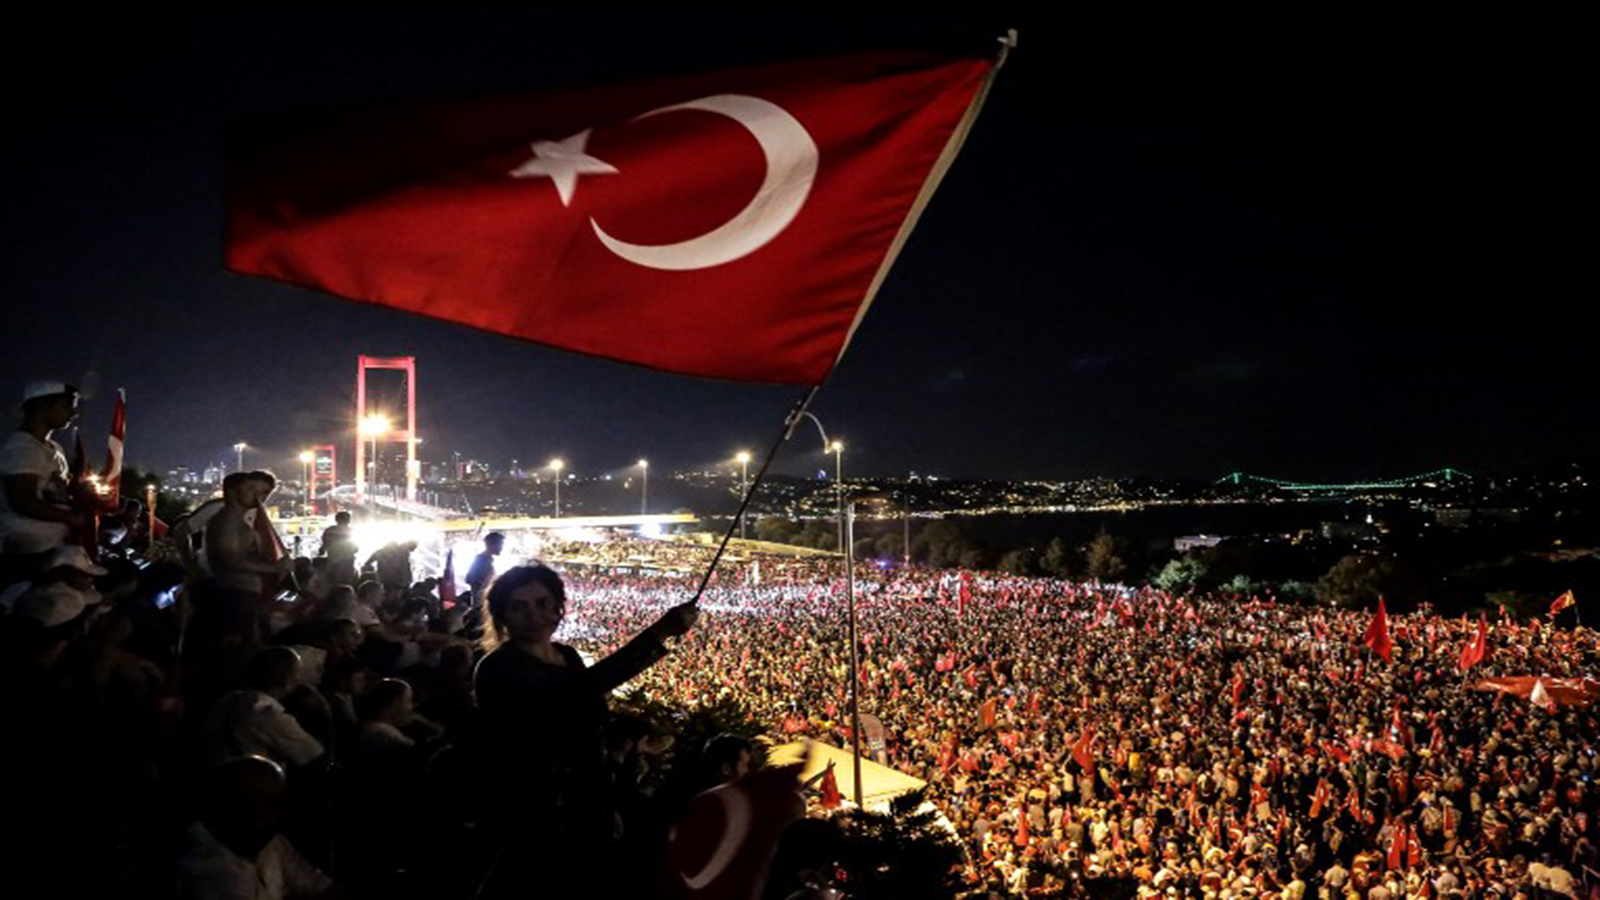 السفير التركي لـ"المدن": سياستنا الخارجية لن تتغير